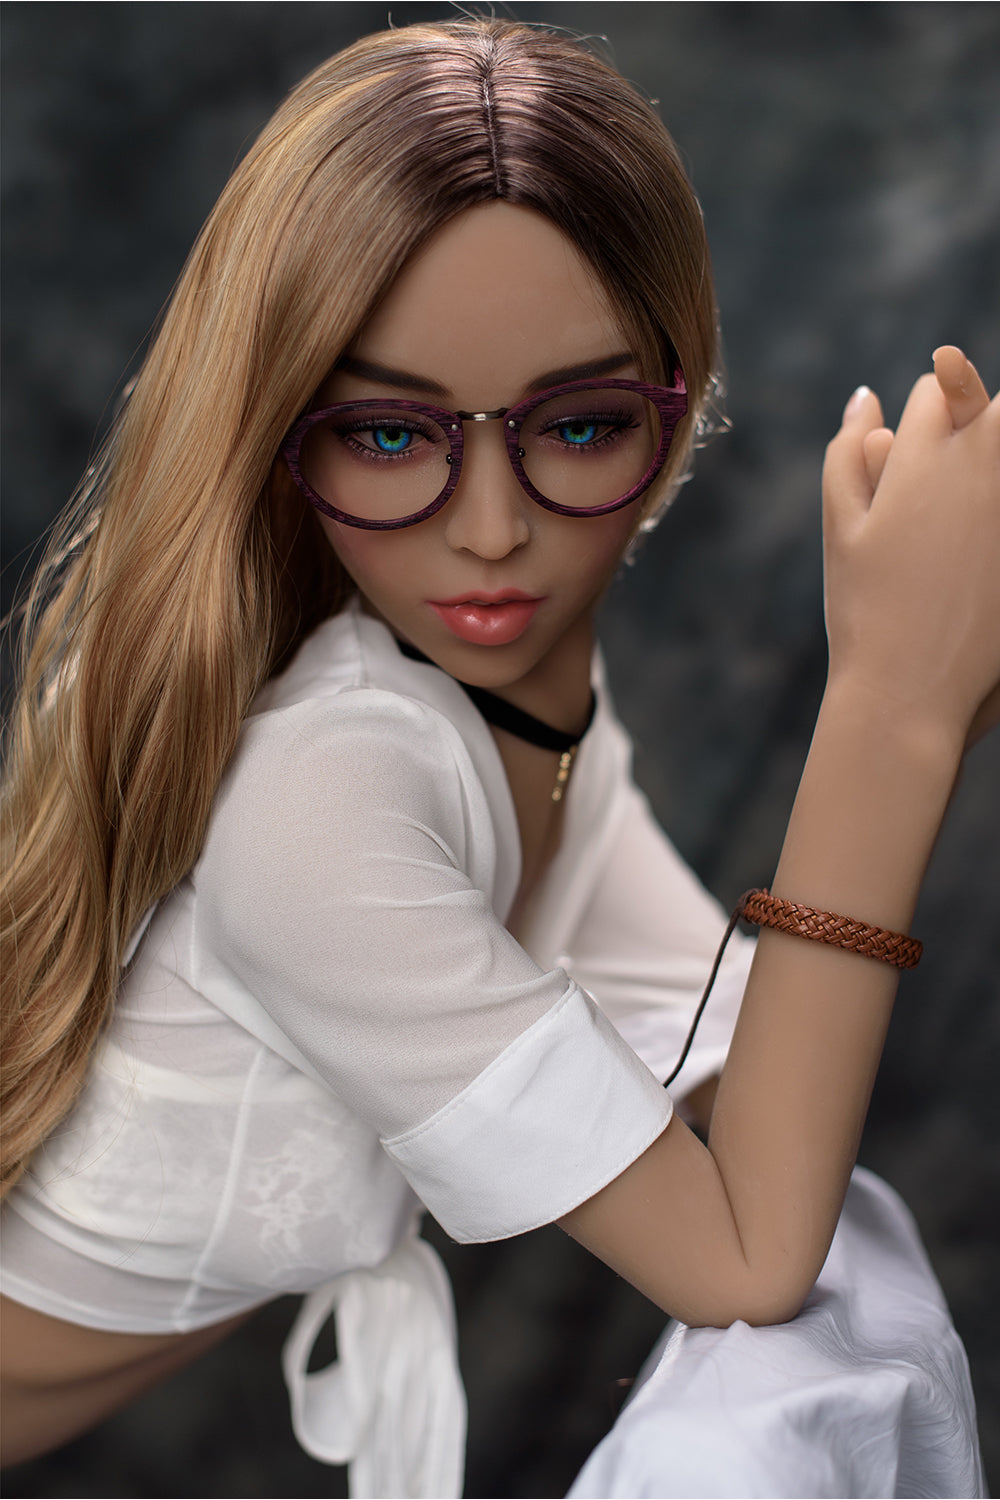 166cm Keara #237 Small Breasts TPE Sex Doll Realistic Adult Love Doll